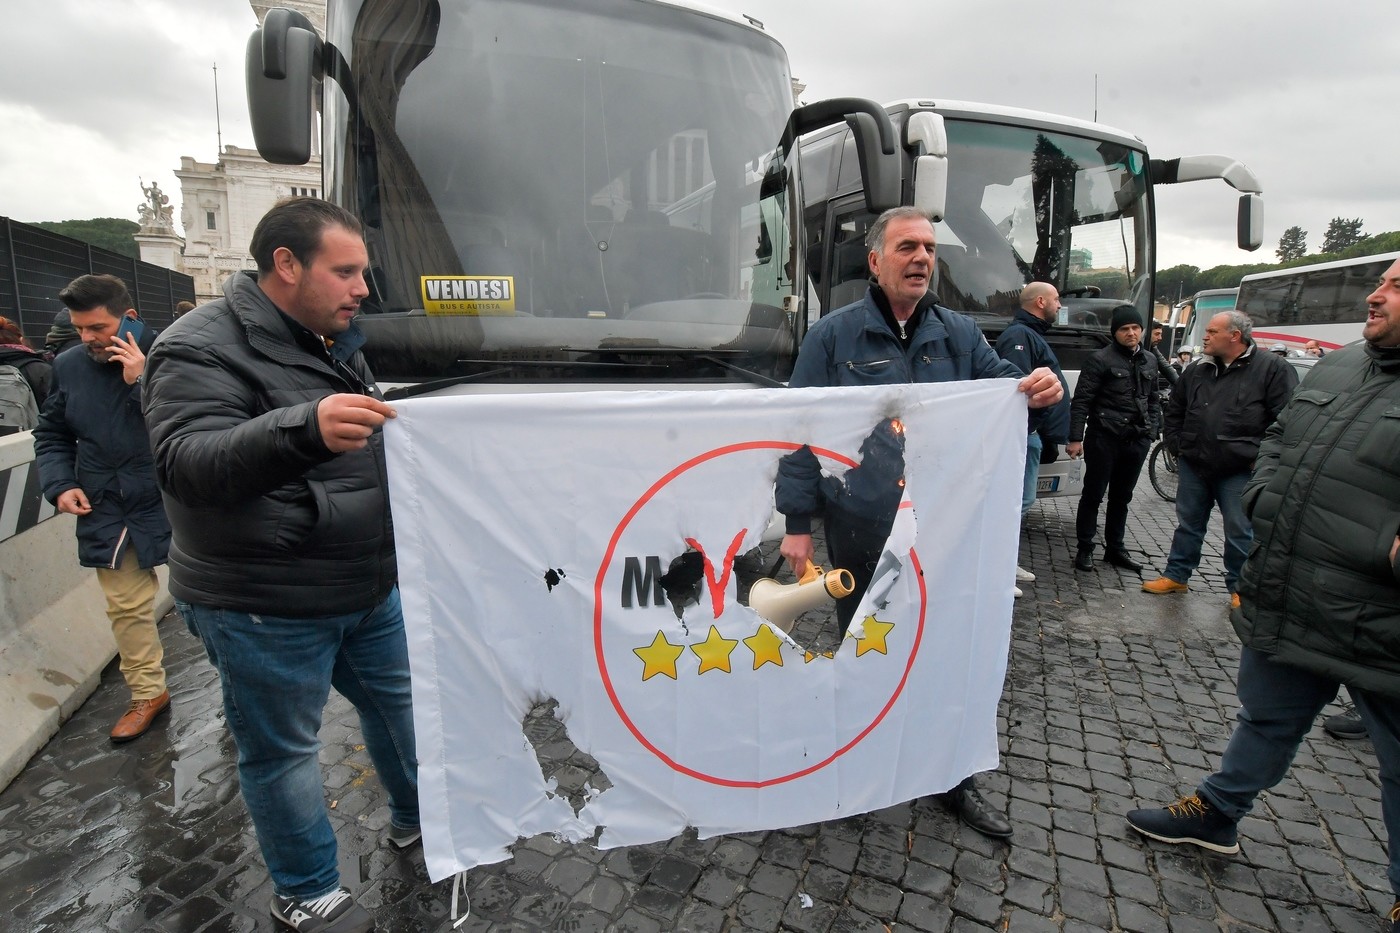 Roma, è il giorno della protesta dei bus turistici: traffico in tilt, bruciata bandiera M5s